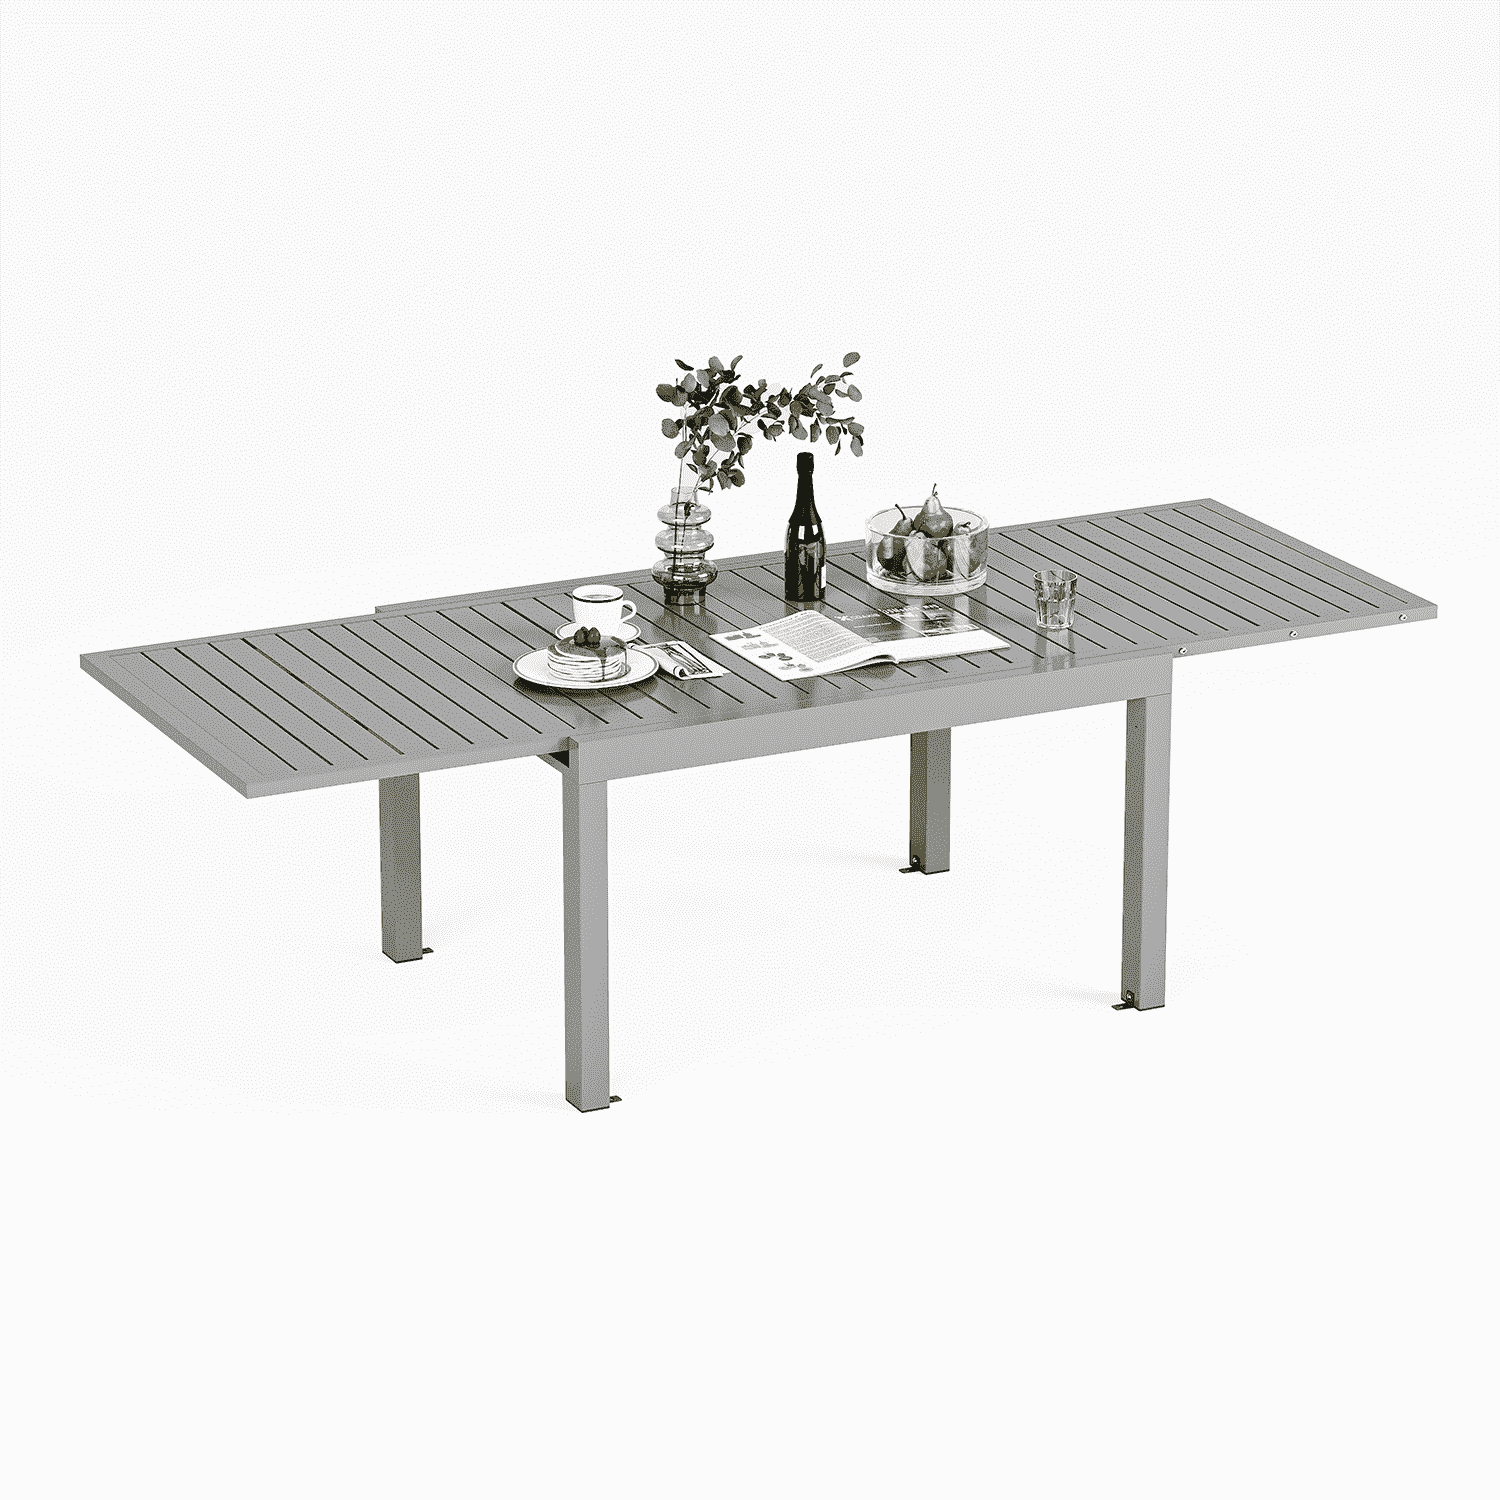 Yardwell Gartentisch ausziehbar aus Aluminium